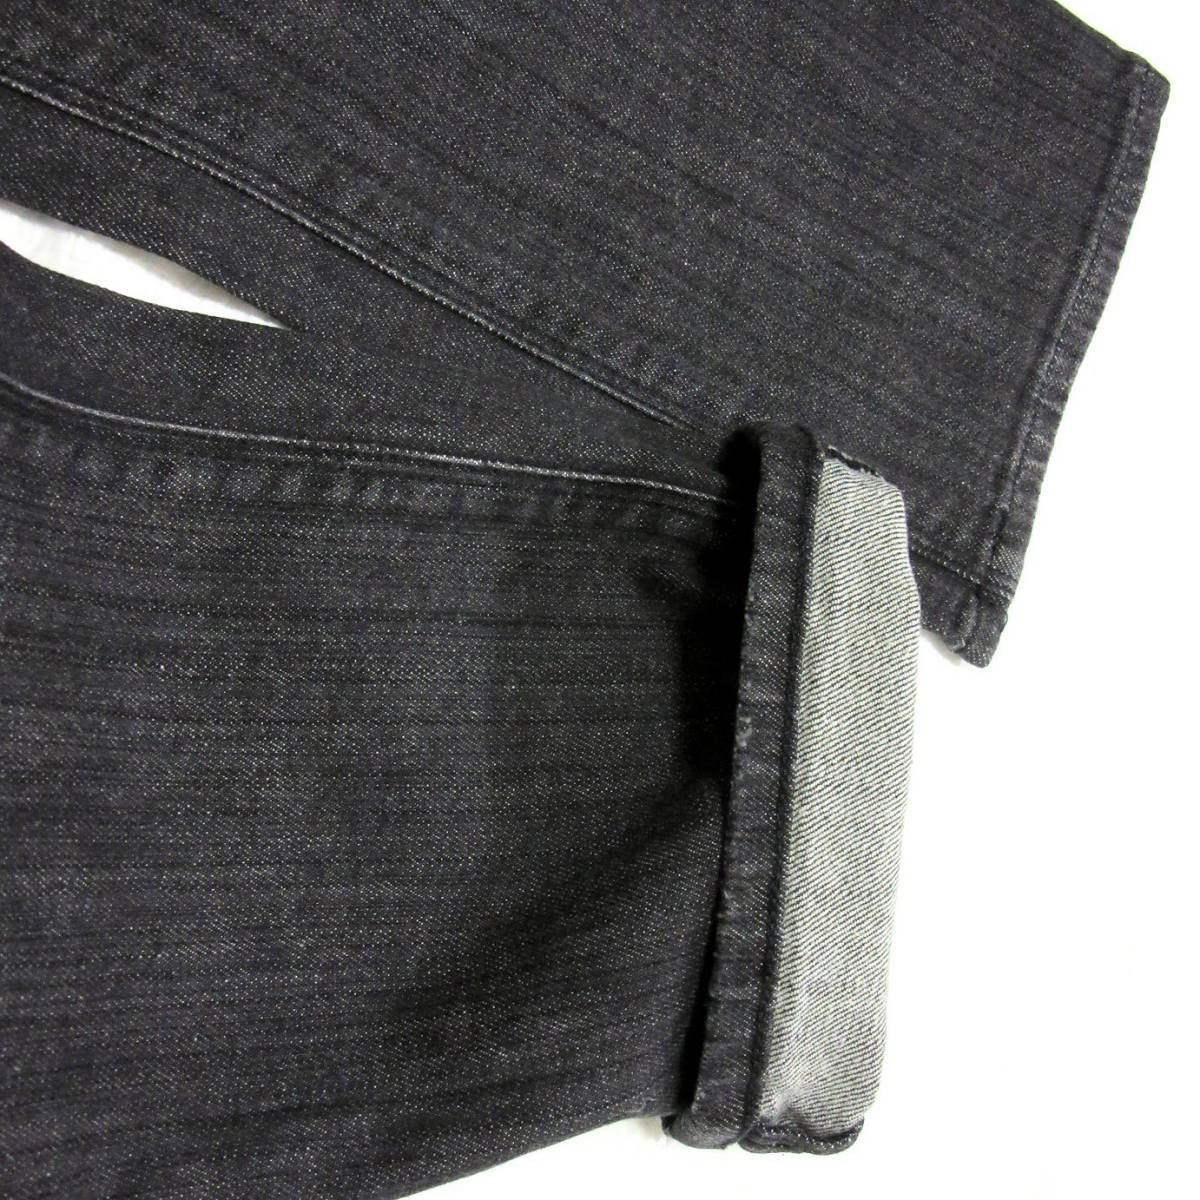 新品タグ付き ARMANI JEANS アルマーニ ジーンズ メンズ ブラック デニム パンツ J06 スリム ストレッチ スキニー 黒 W31 Mサイズ 